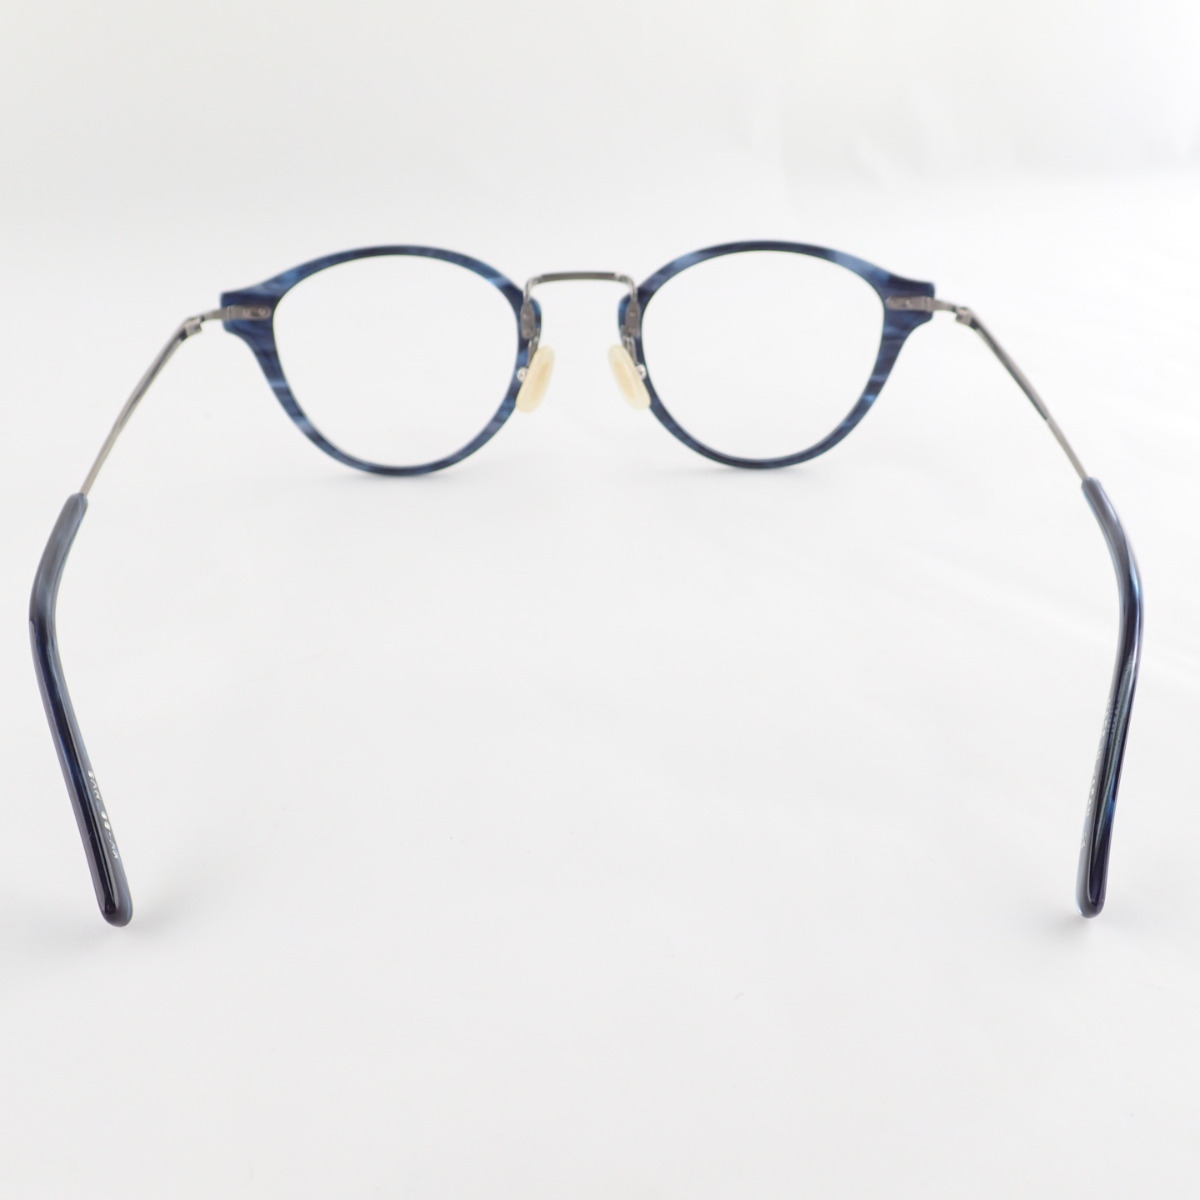 【楽天市場】KANEKO OPTICAL 金子眼鏡 KV-88 Vintageシリーズ レンズ無し コンビメガネフレーム 50 23 145